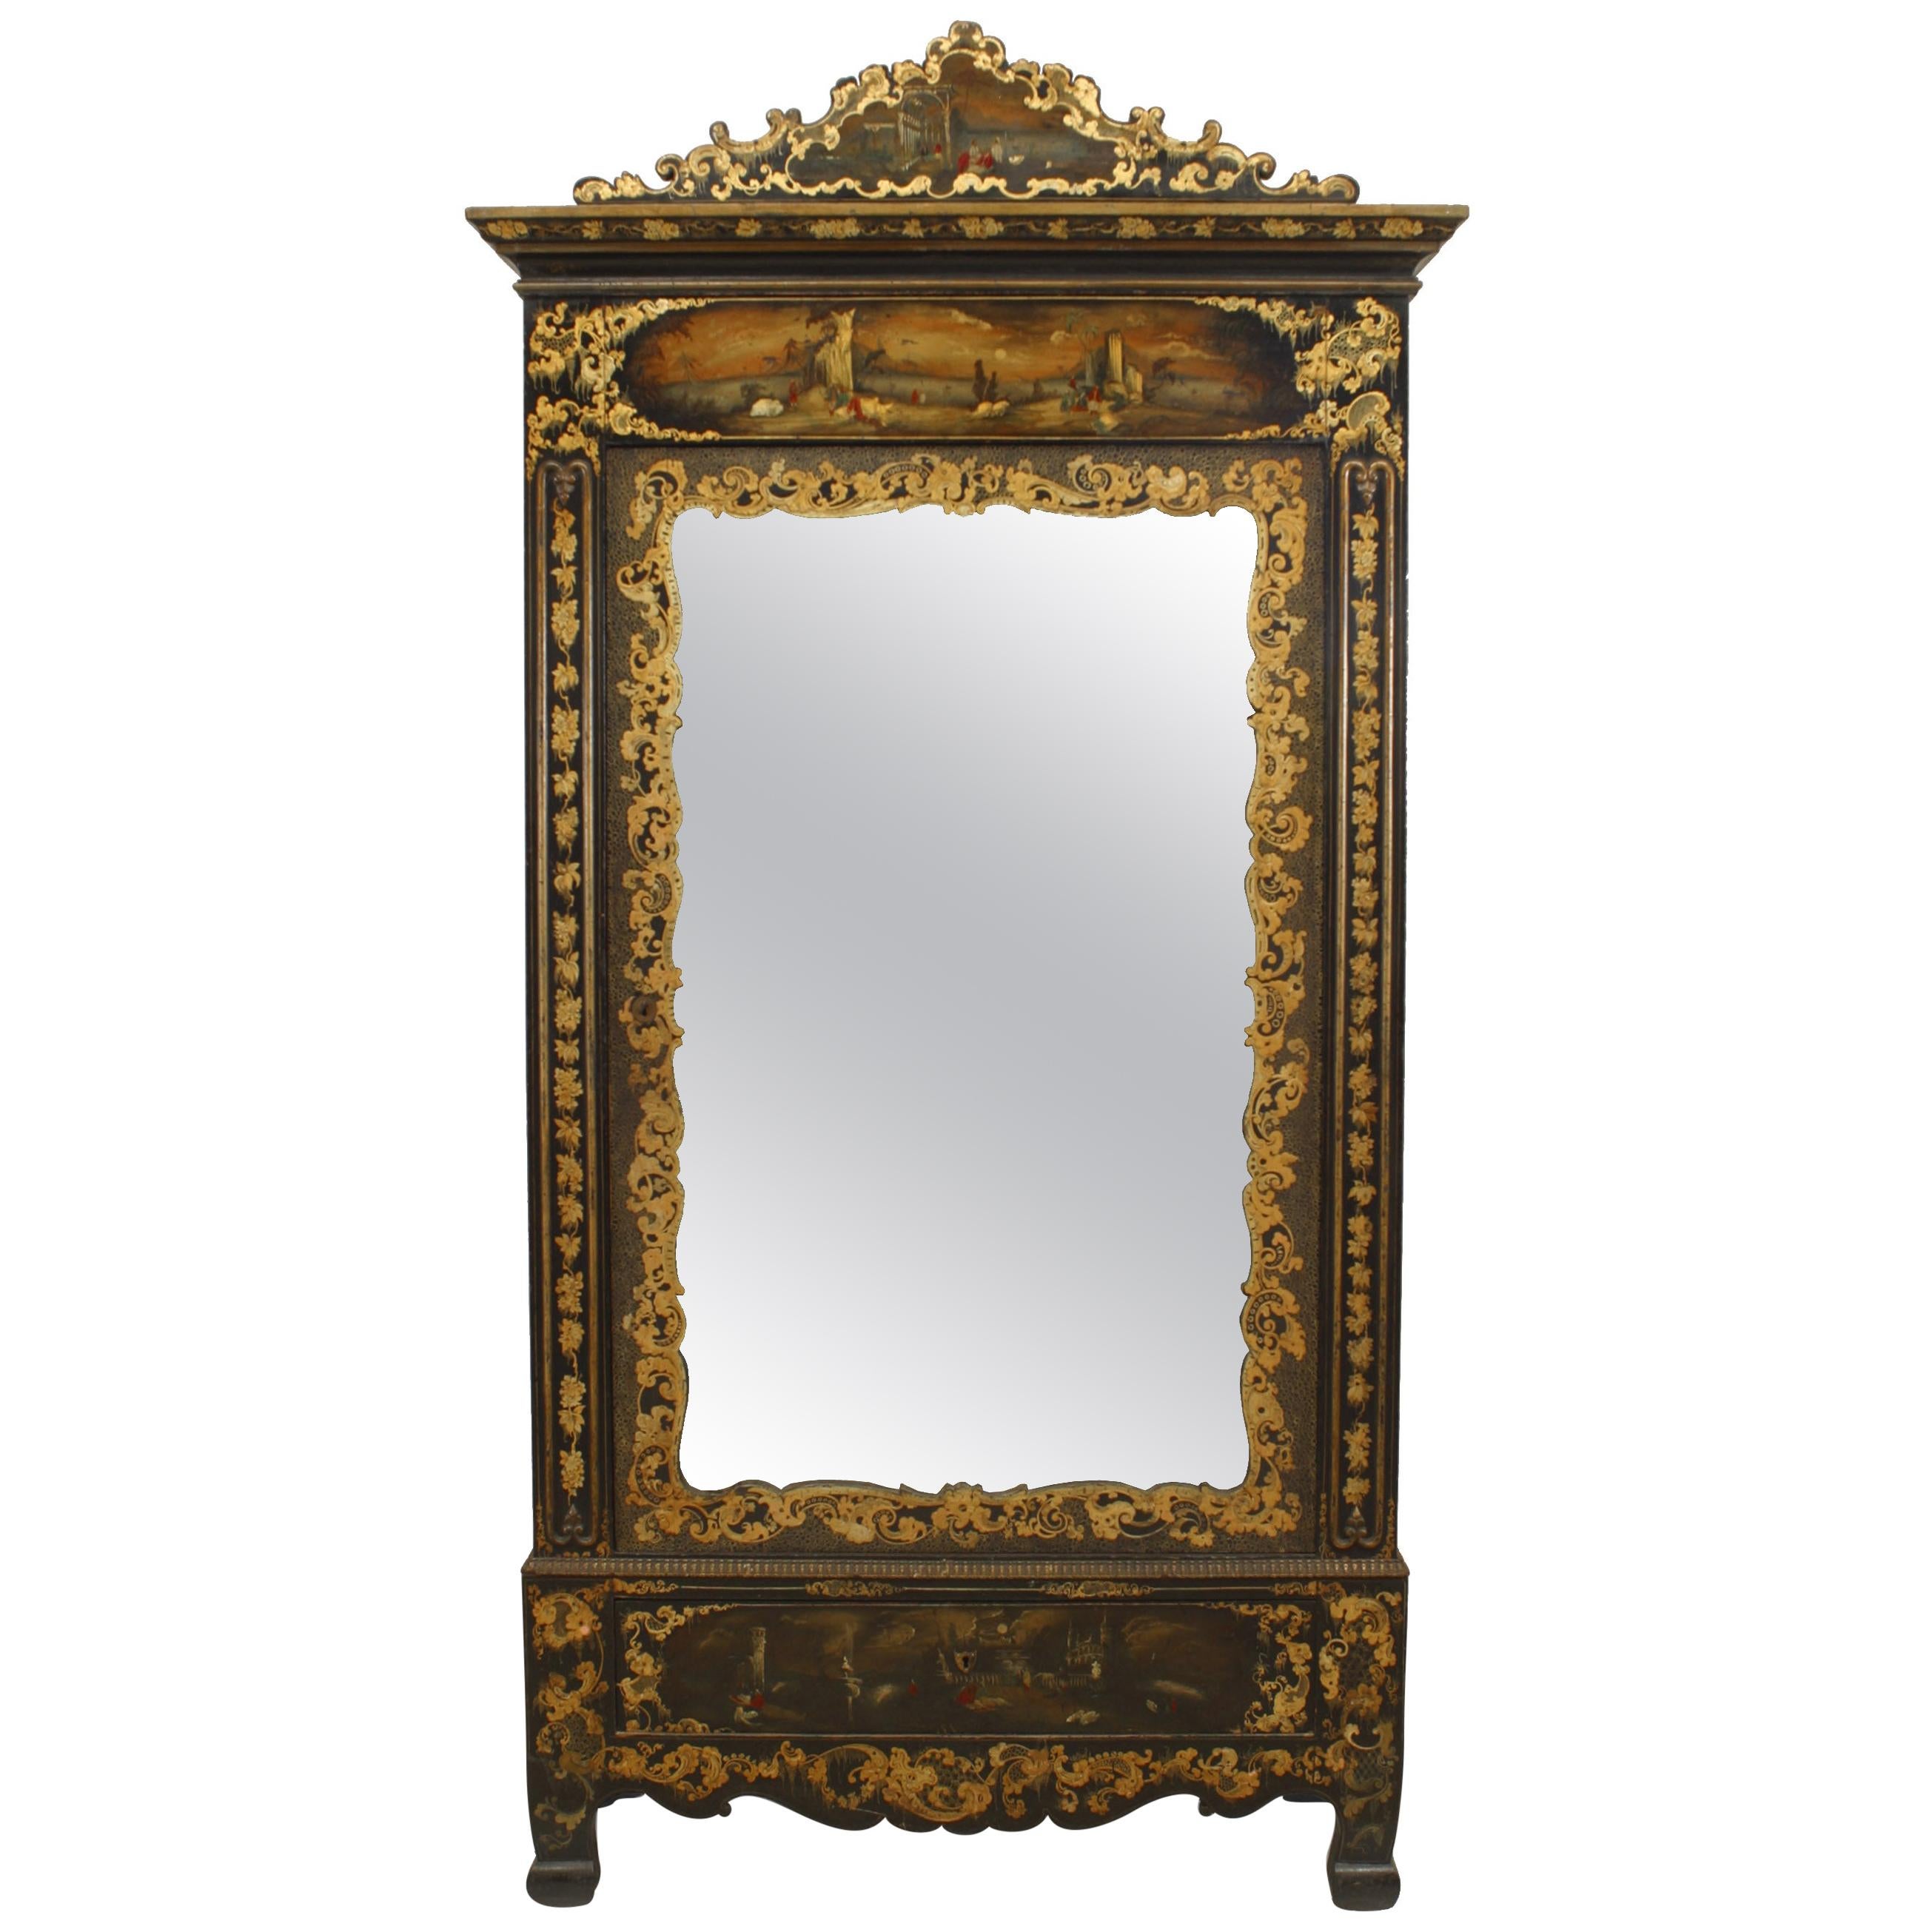 Viktorianischer schwarz lackierter Spiegelschrank mit vergoldeten Verzierungen